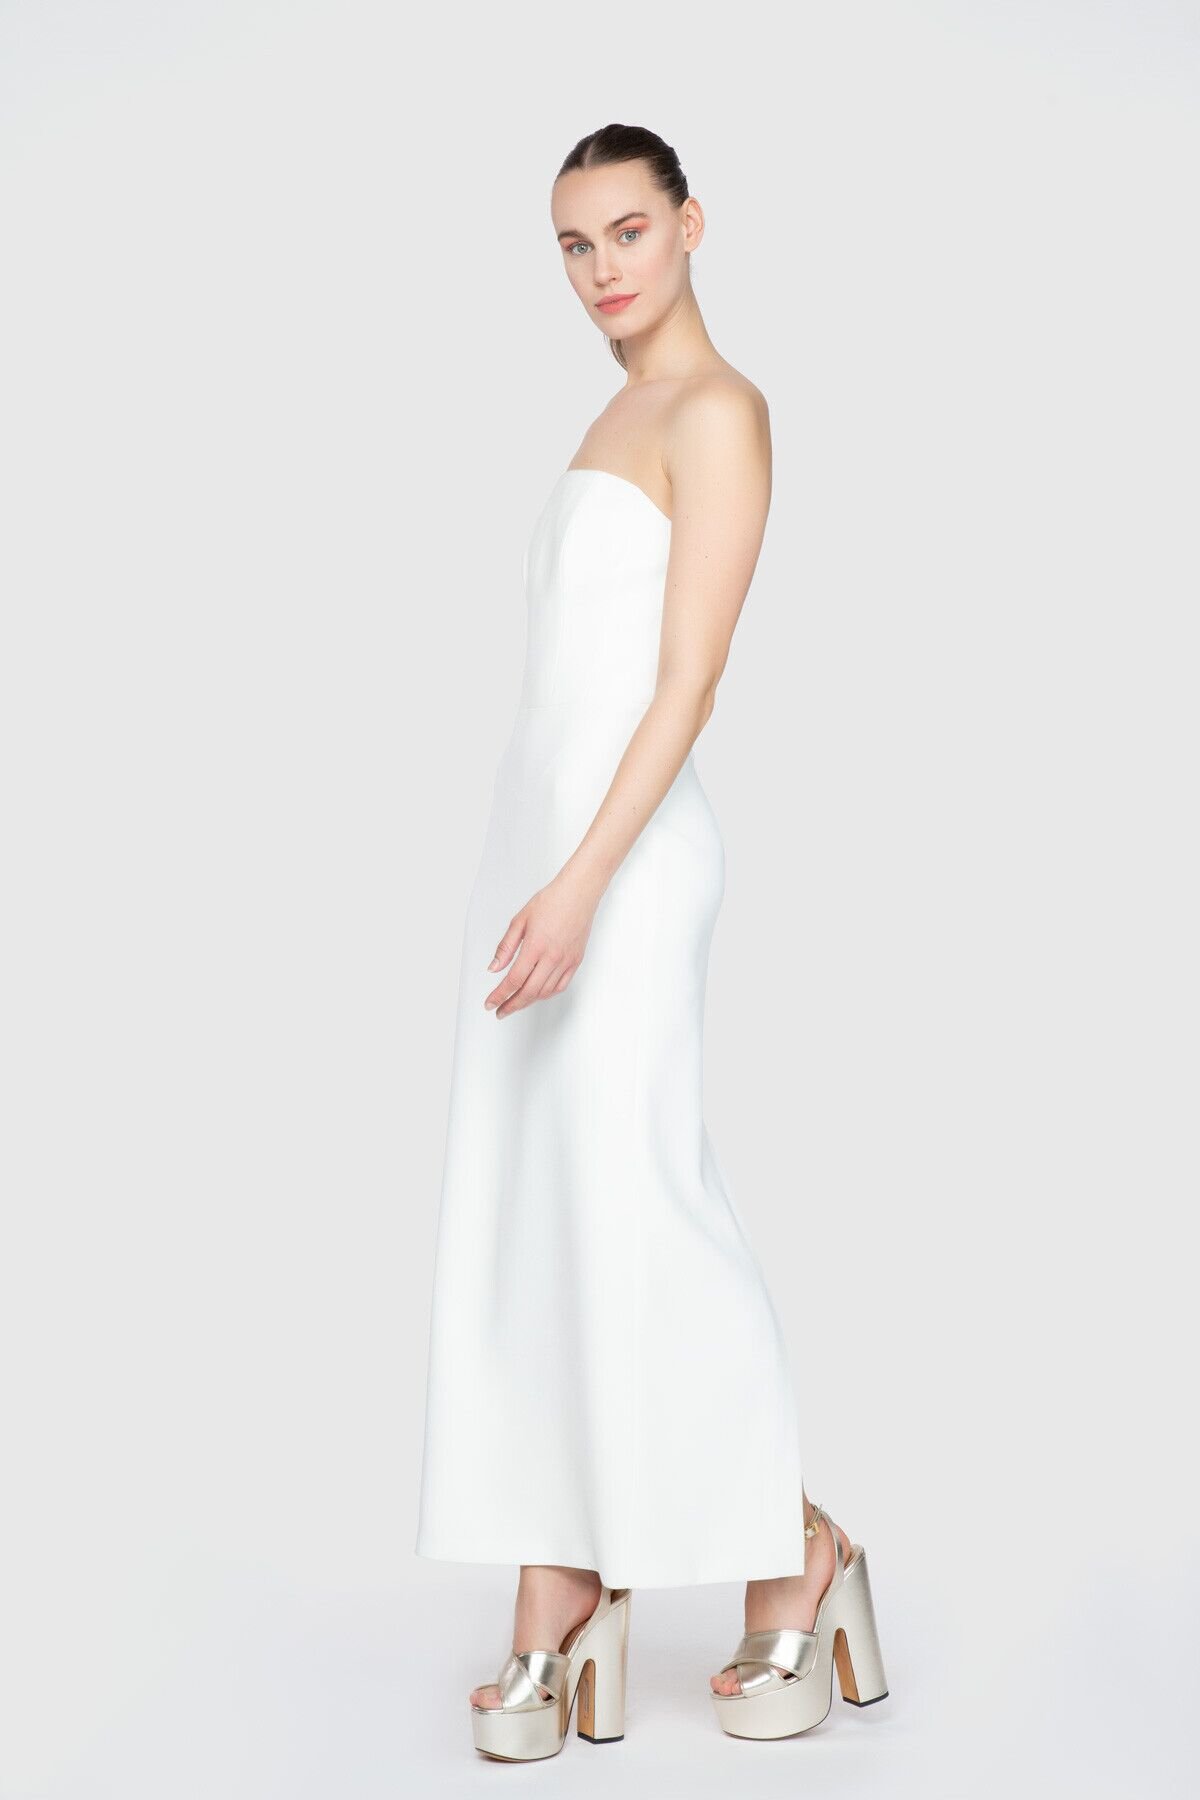 Strapless Long White Dress